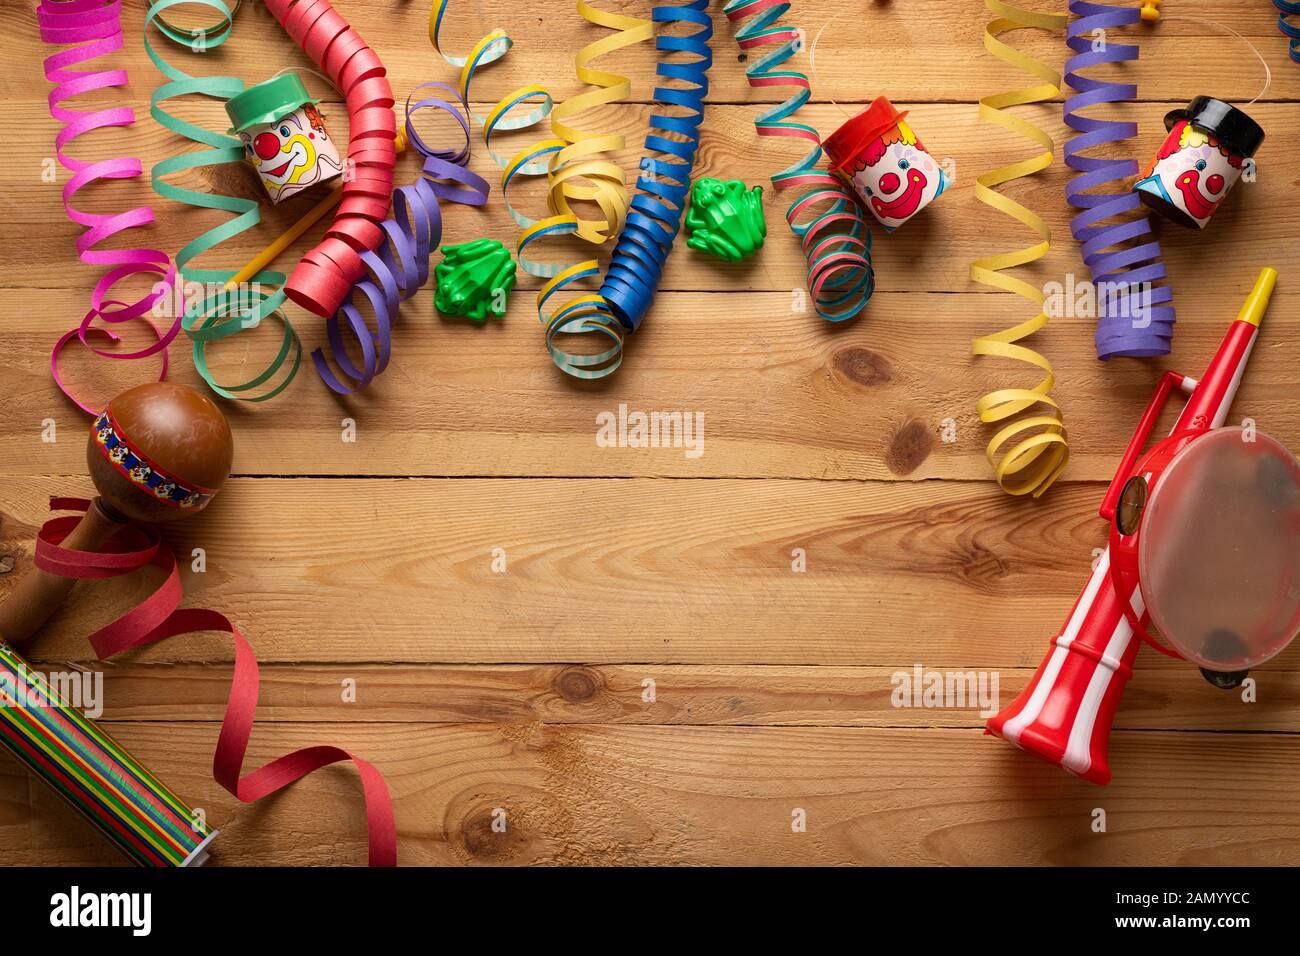 Arrière-plan de carnaval sur une surface en bois. Masques, chapeaux, serpentins, confettis serpentins Banque D'Images